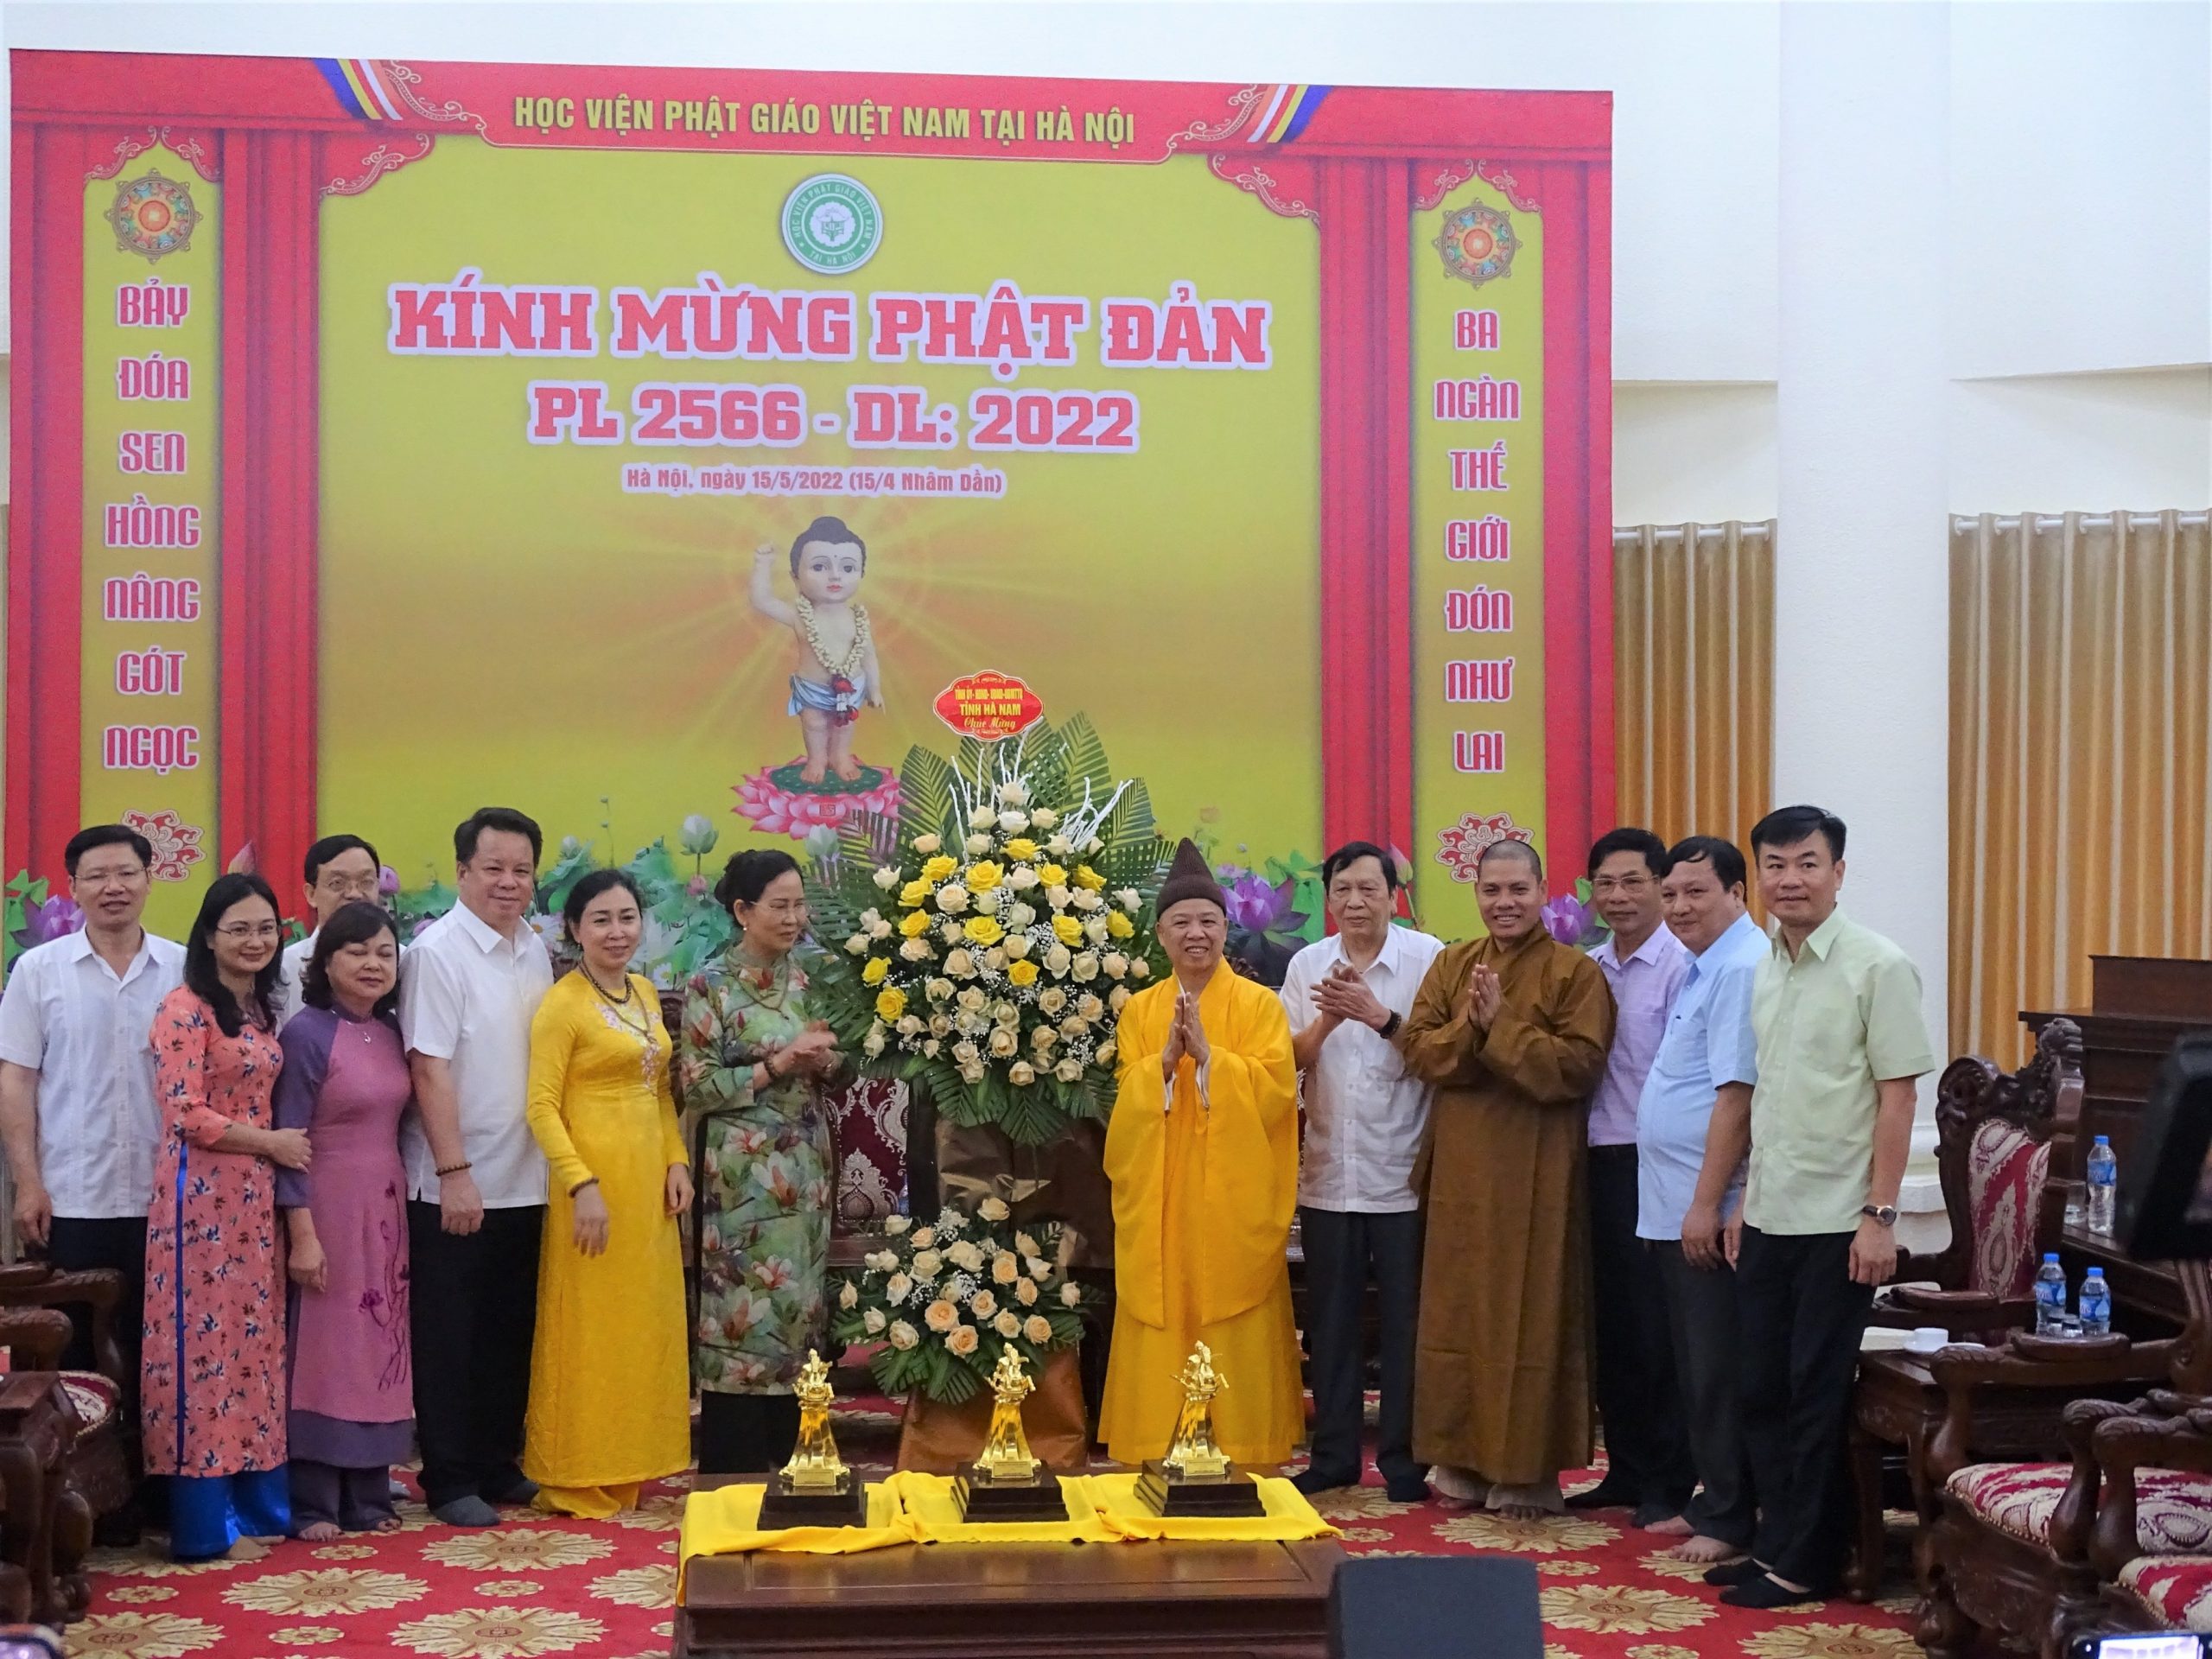 Phái đoàn Tỉnh ủy, UBND tỉnh Hà Nam đến chúc mừng Phật đản Học viện Phật giáo Việt Nam tại Hà Nội